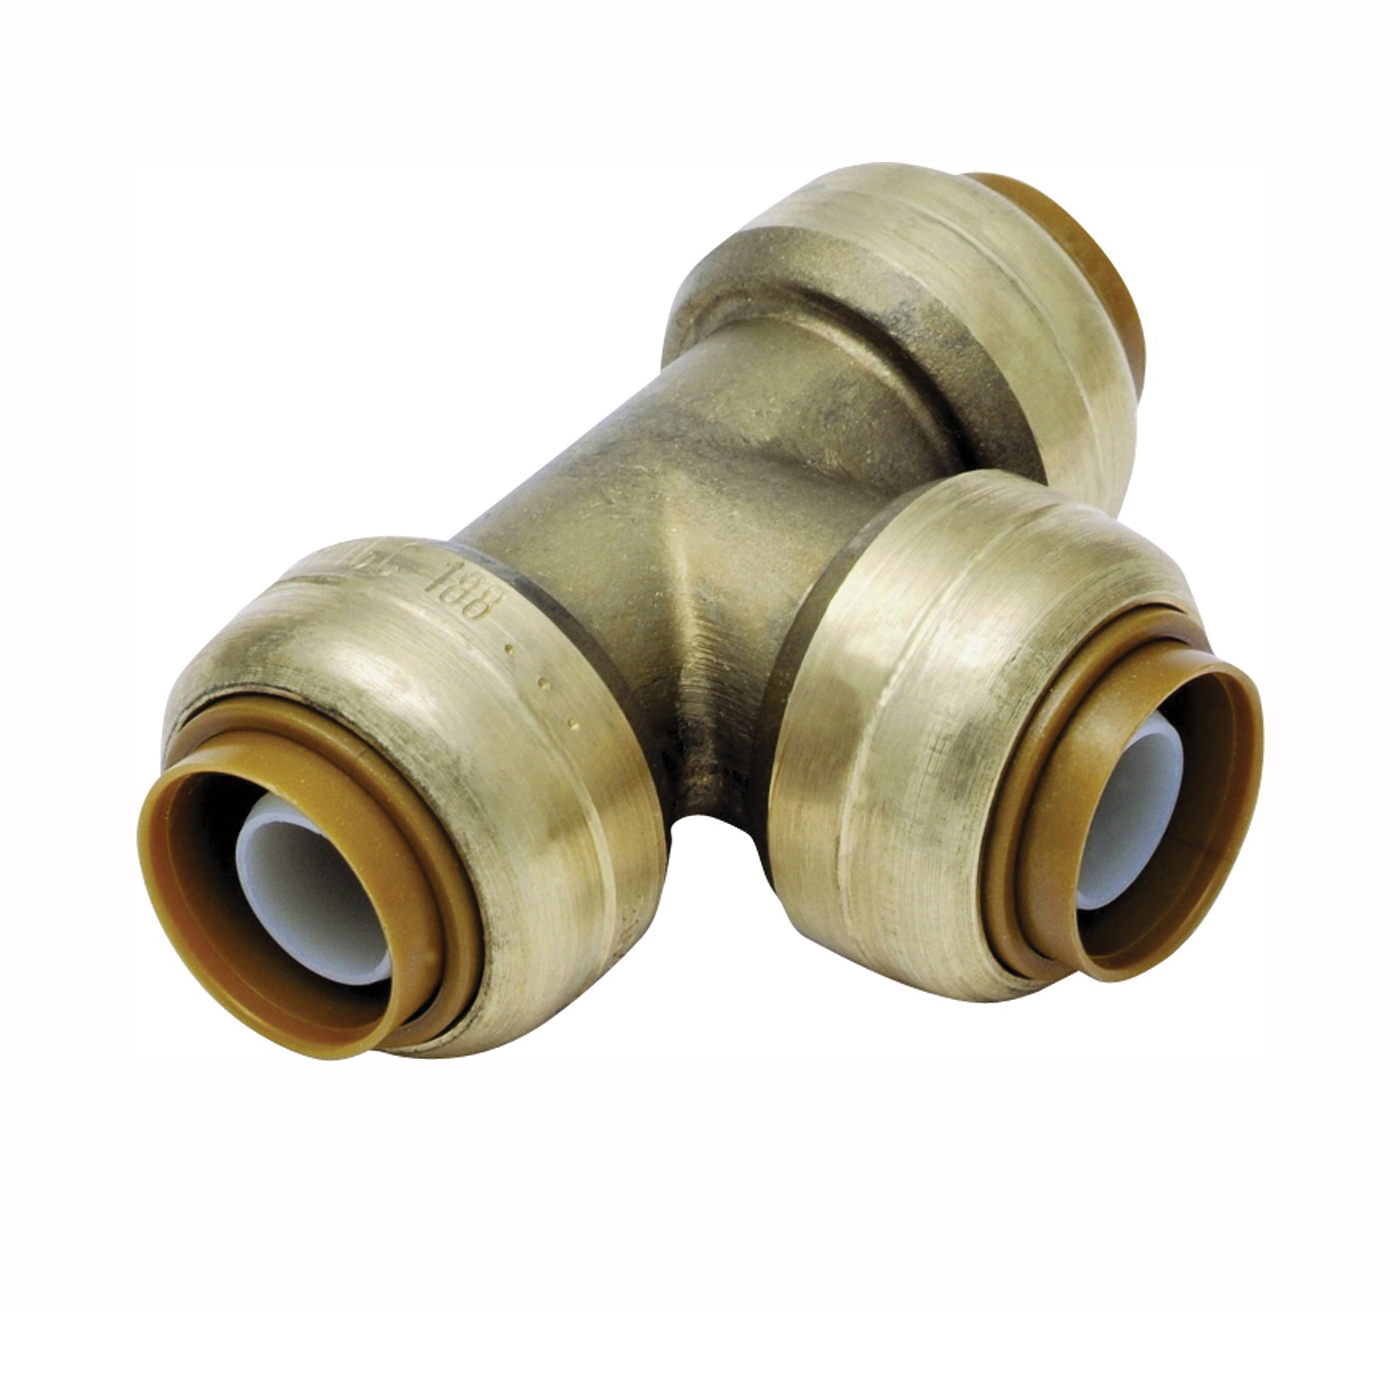 U454LFA Pipe Tee, 3/4 x 1/2 x 1/2 in, Push-Fit, DZR Brass, 200 psi Pressure